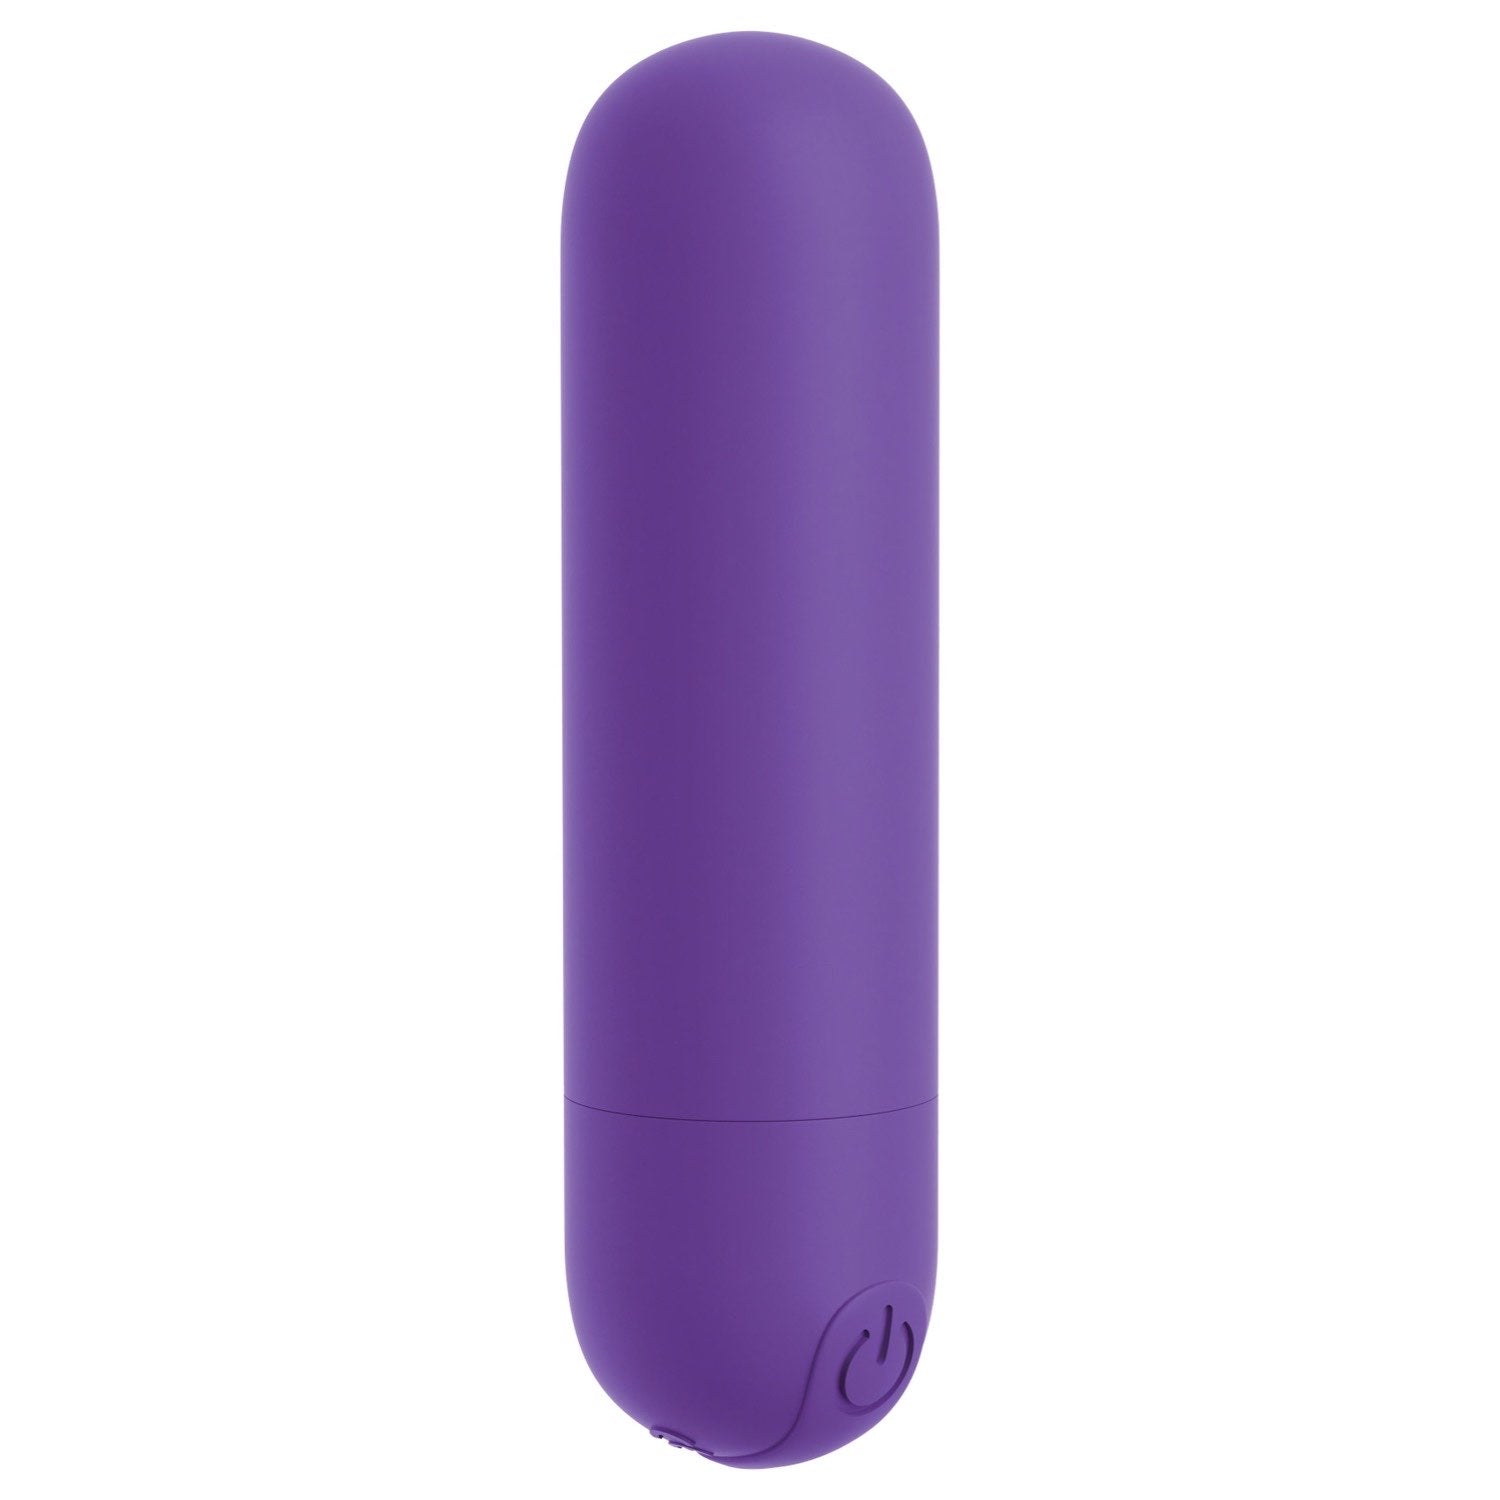 我的天啊！ 我的天啊！ Bullets #Play - 紫色 USB 可充电子弹头 by Pipedream